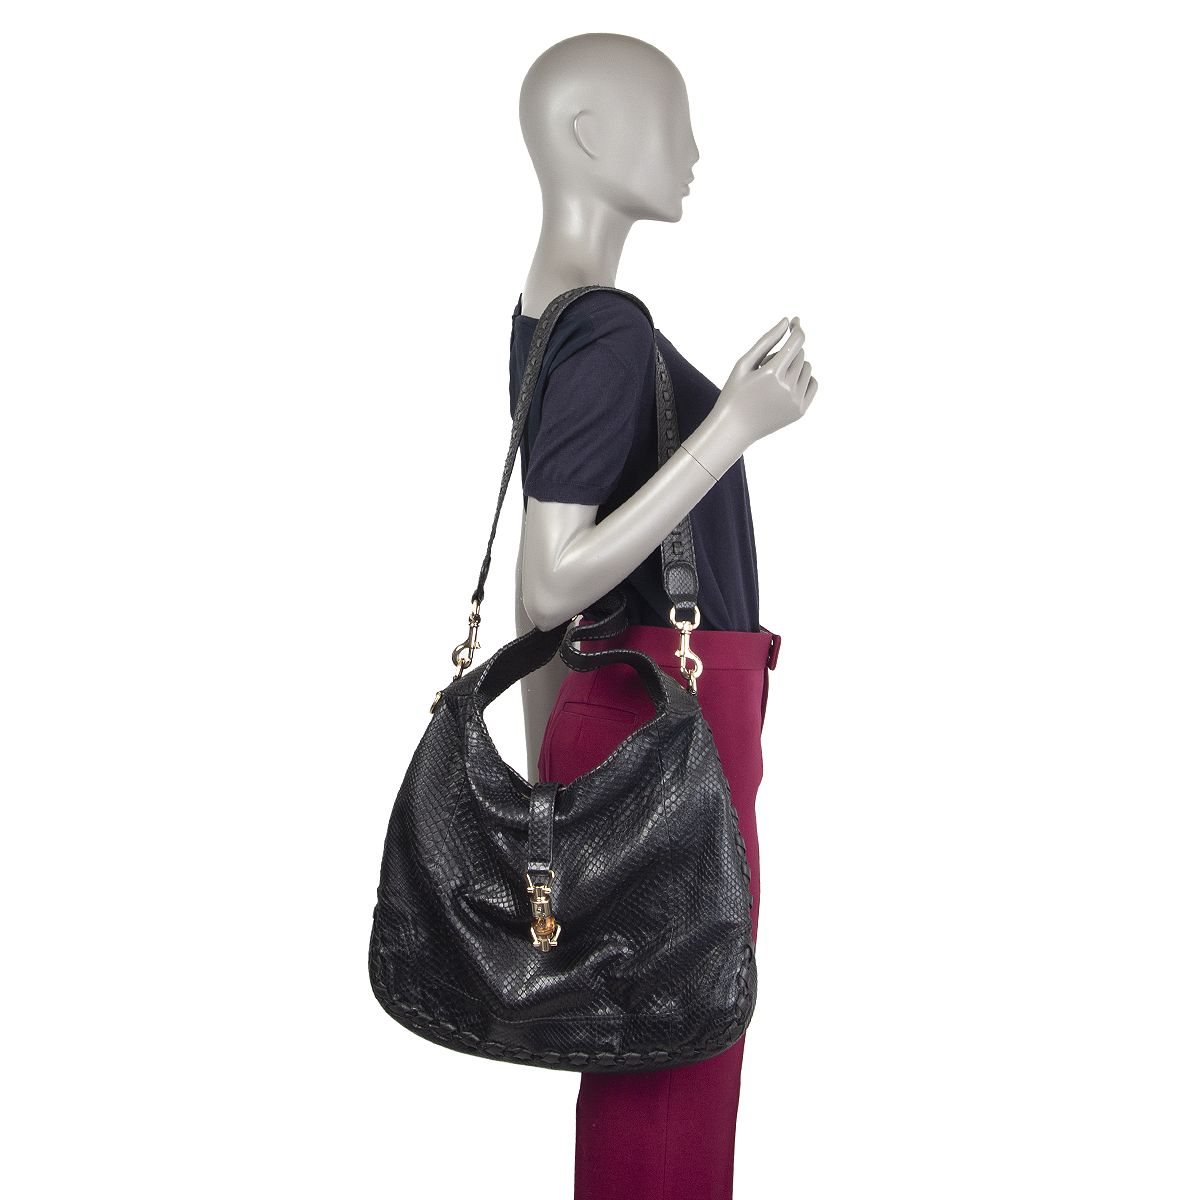 Ladies Snakeskin Handbag  Patent Shoulder Bag Large Designer Office Fashion